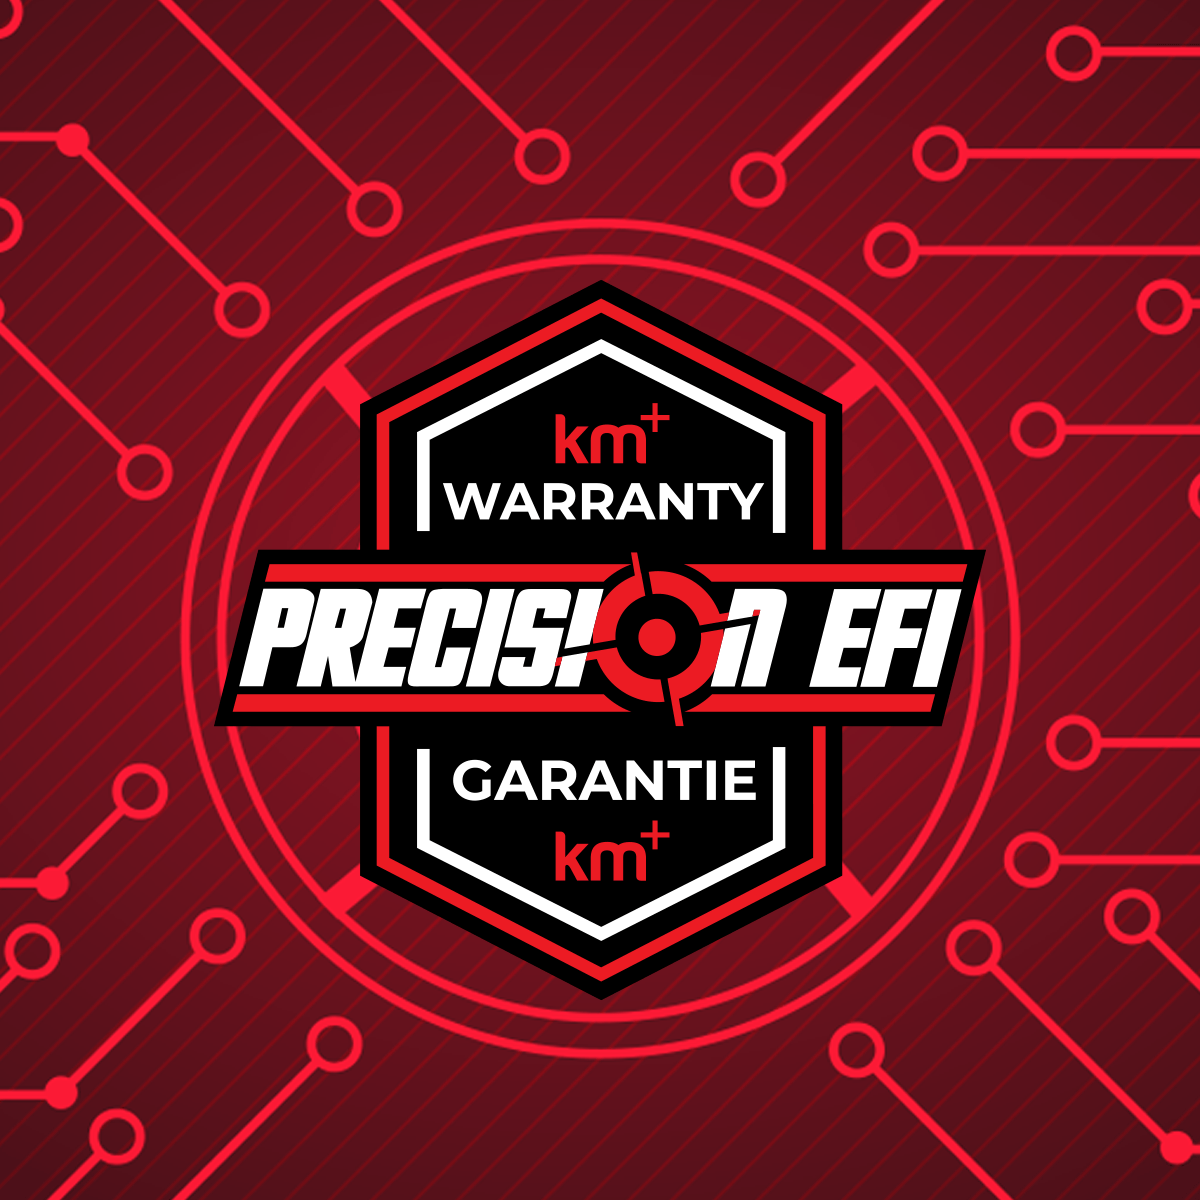 WARRANTY - 900T - Precision EFI